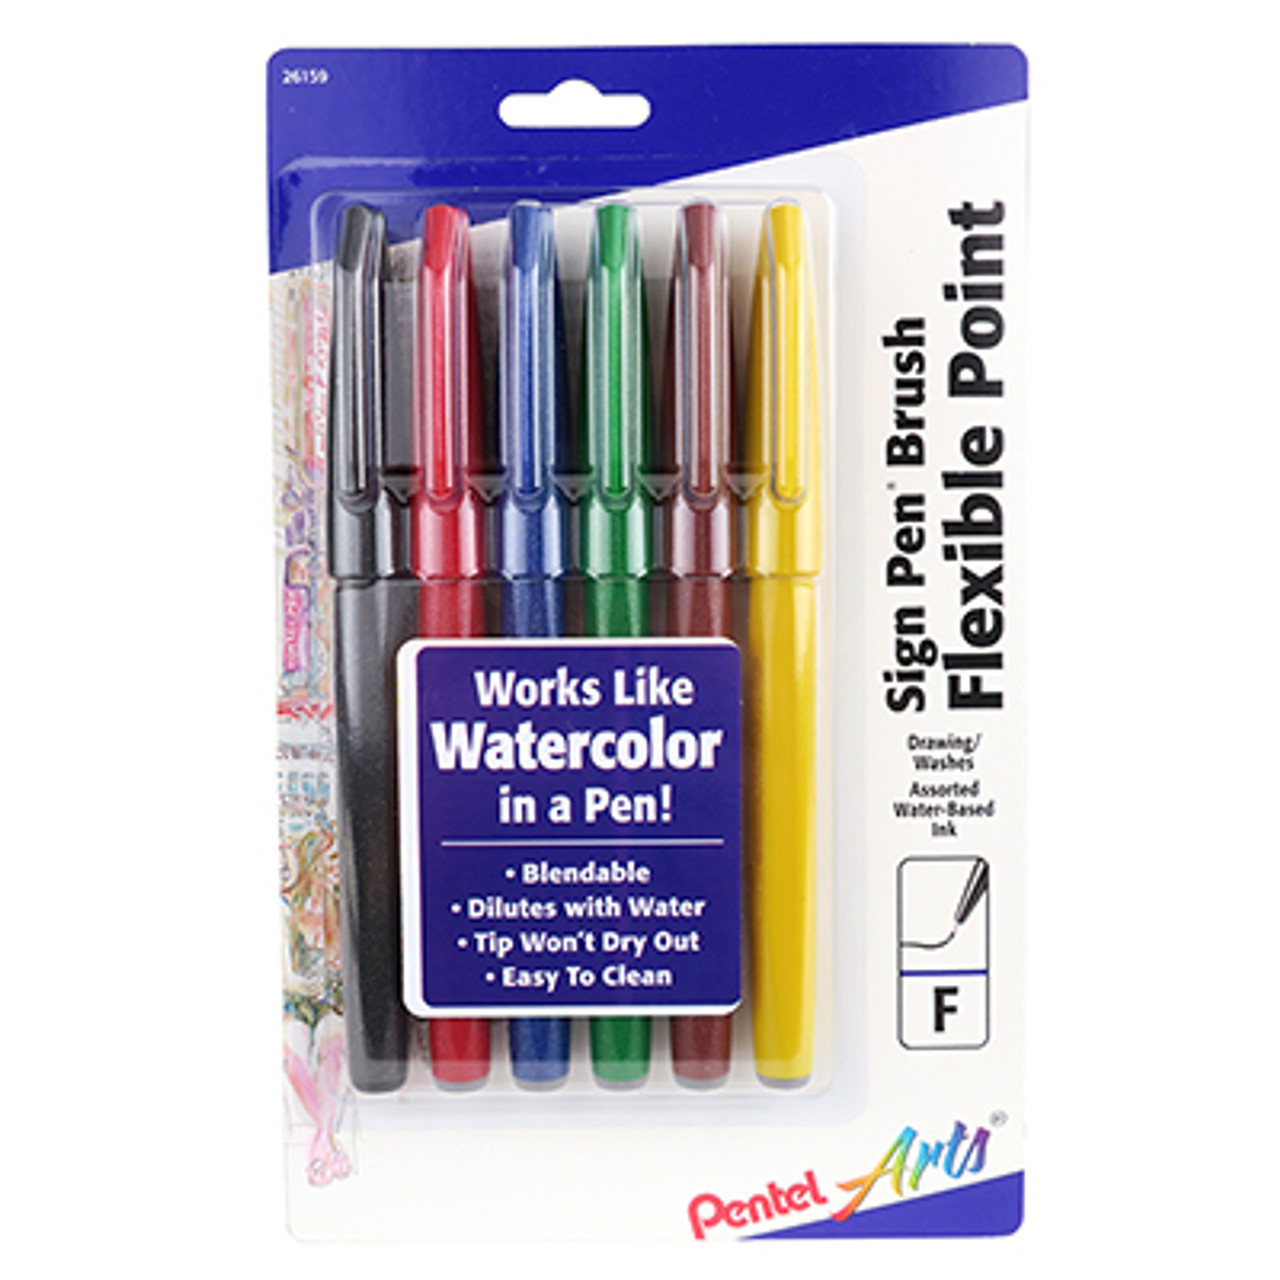  Water Coloring Brush Pens, Set of 6 Watercolor